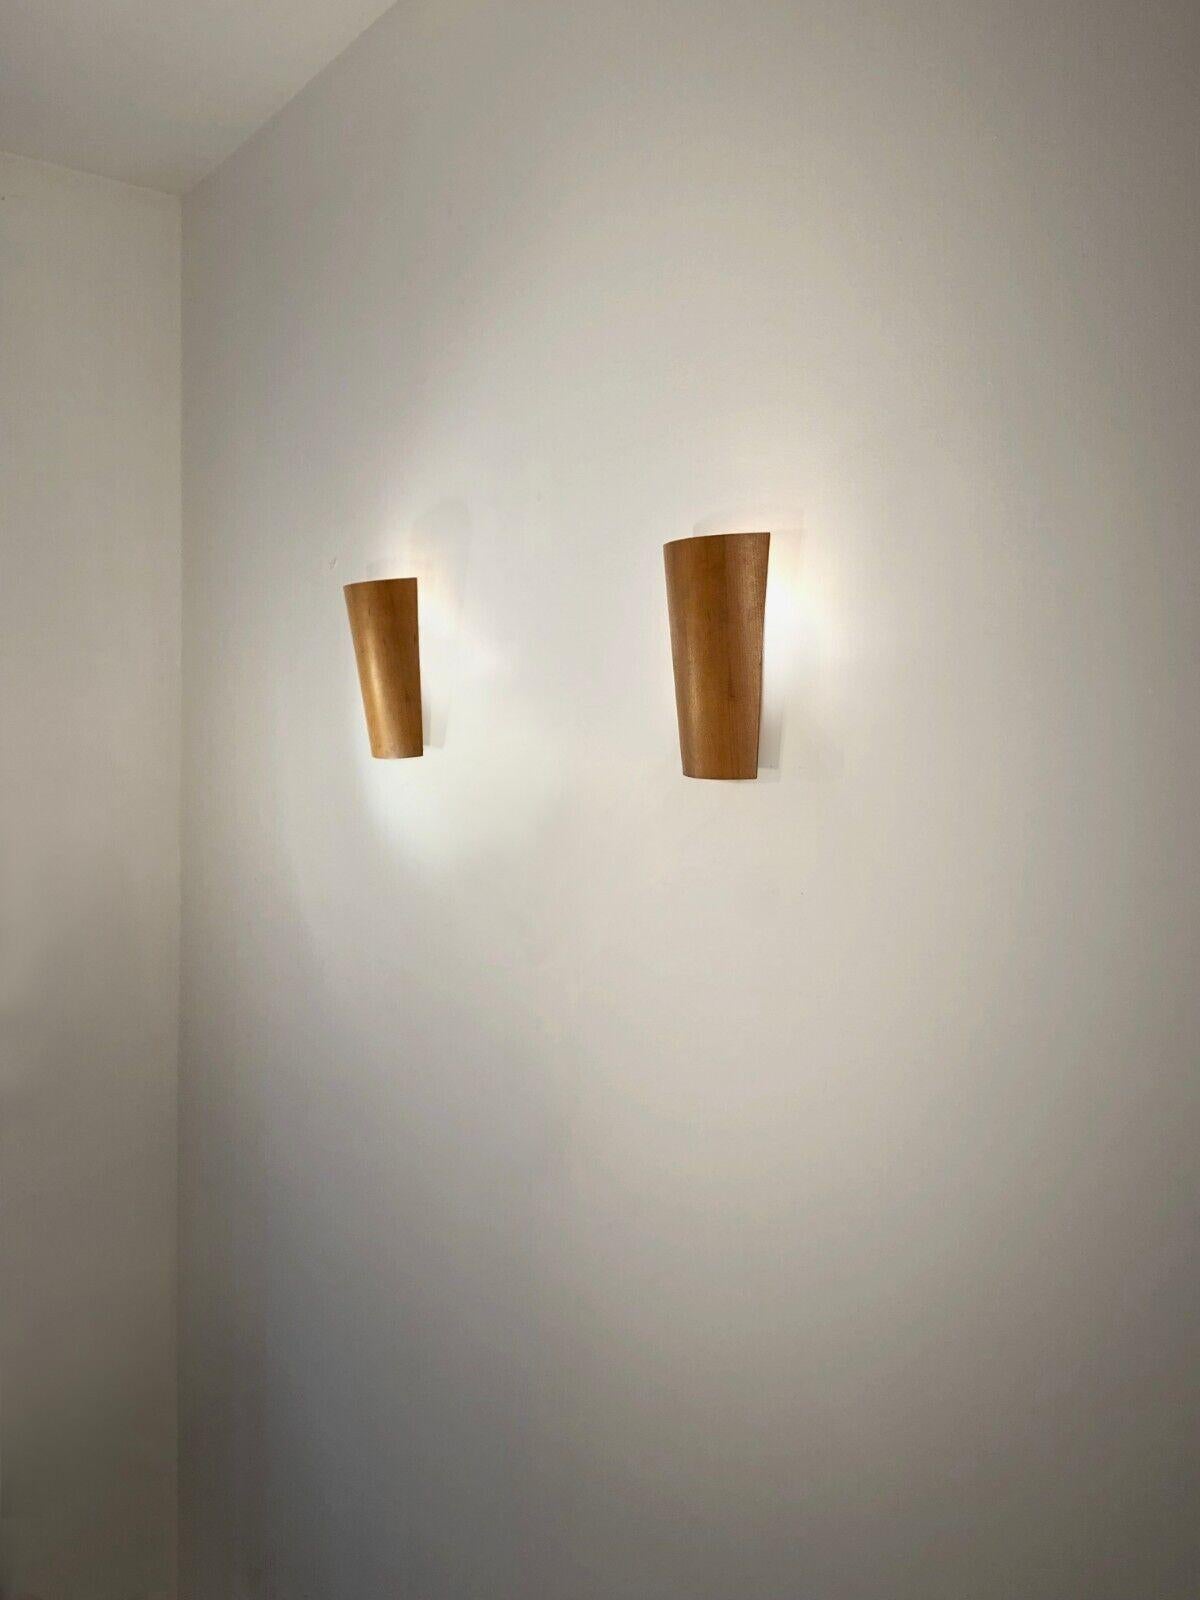 Une paire d'appliques chaleureuses, élégantes et simples, post-modernes et minimalistes, post-modernistes, minimalistes, constructivistes, années 90, composées de 2 volets courbes en bois clair diffusant la lumière vers le mur, montés sur de